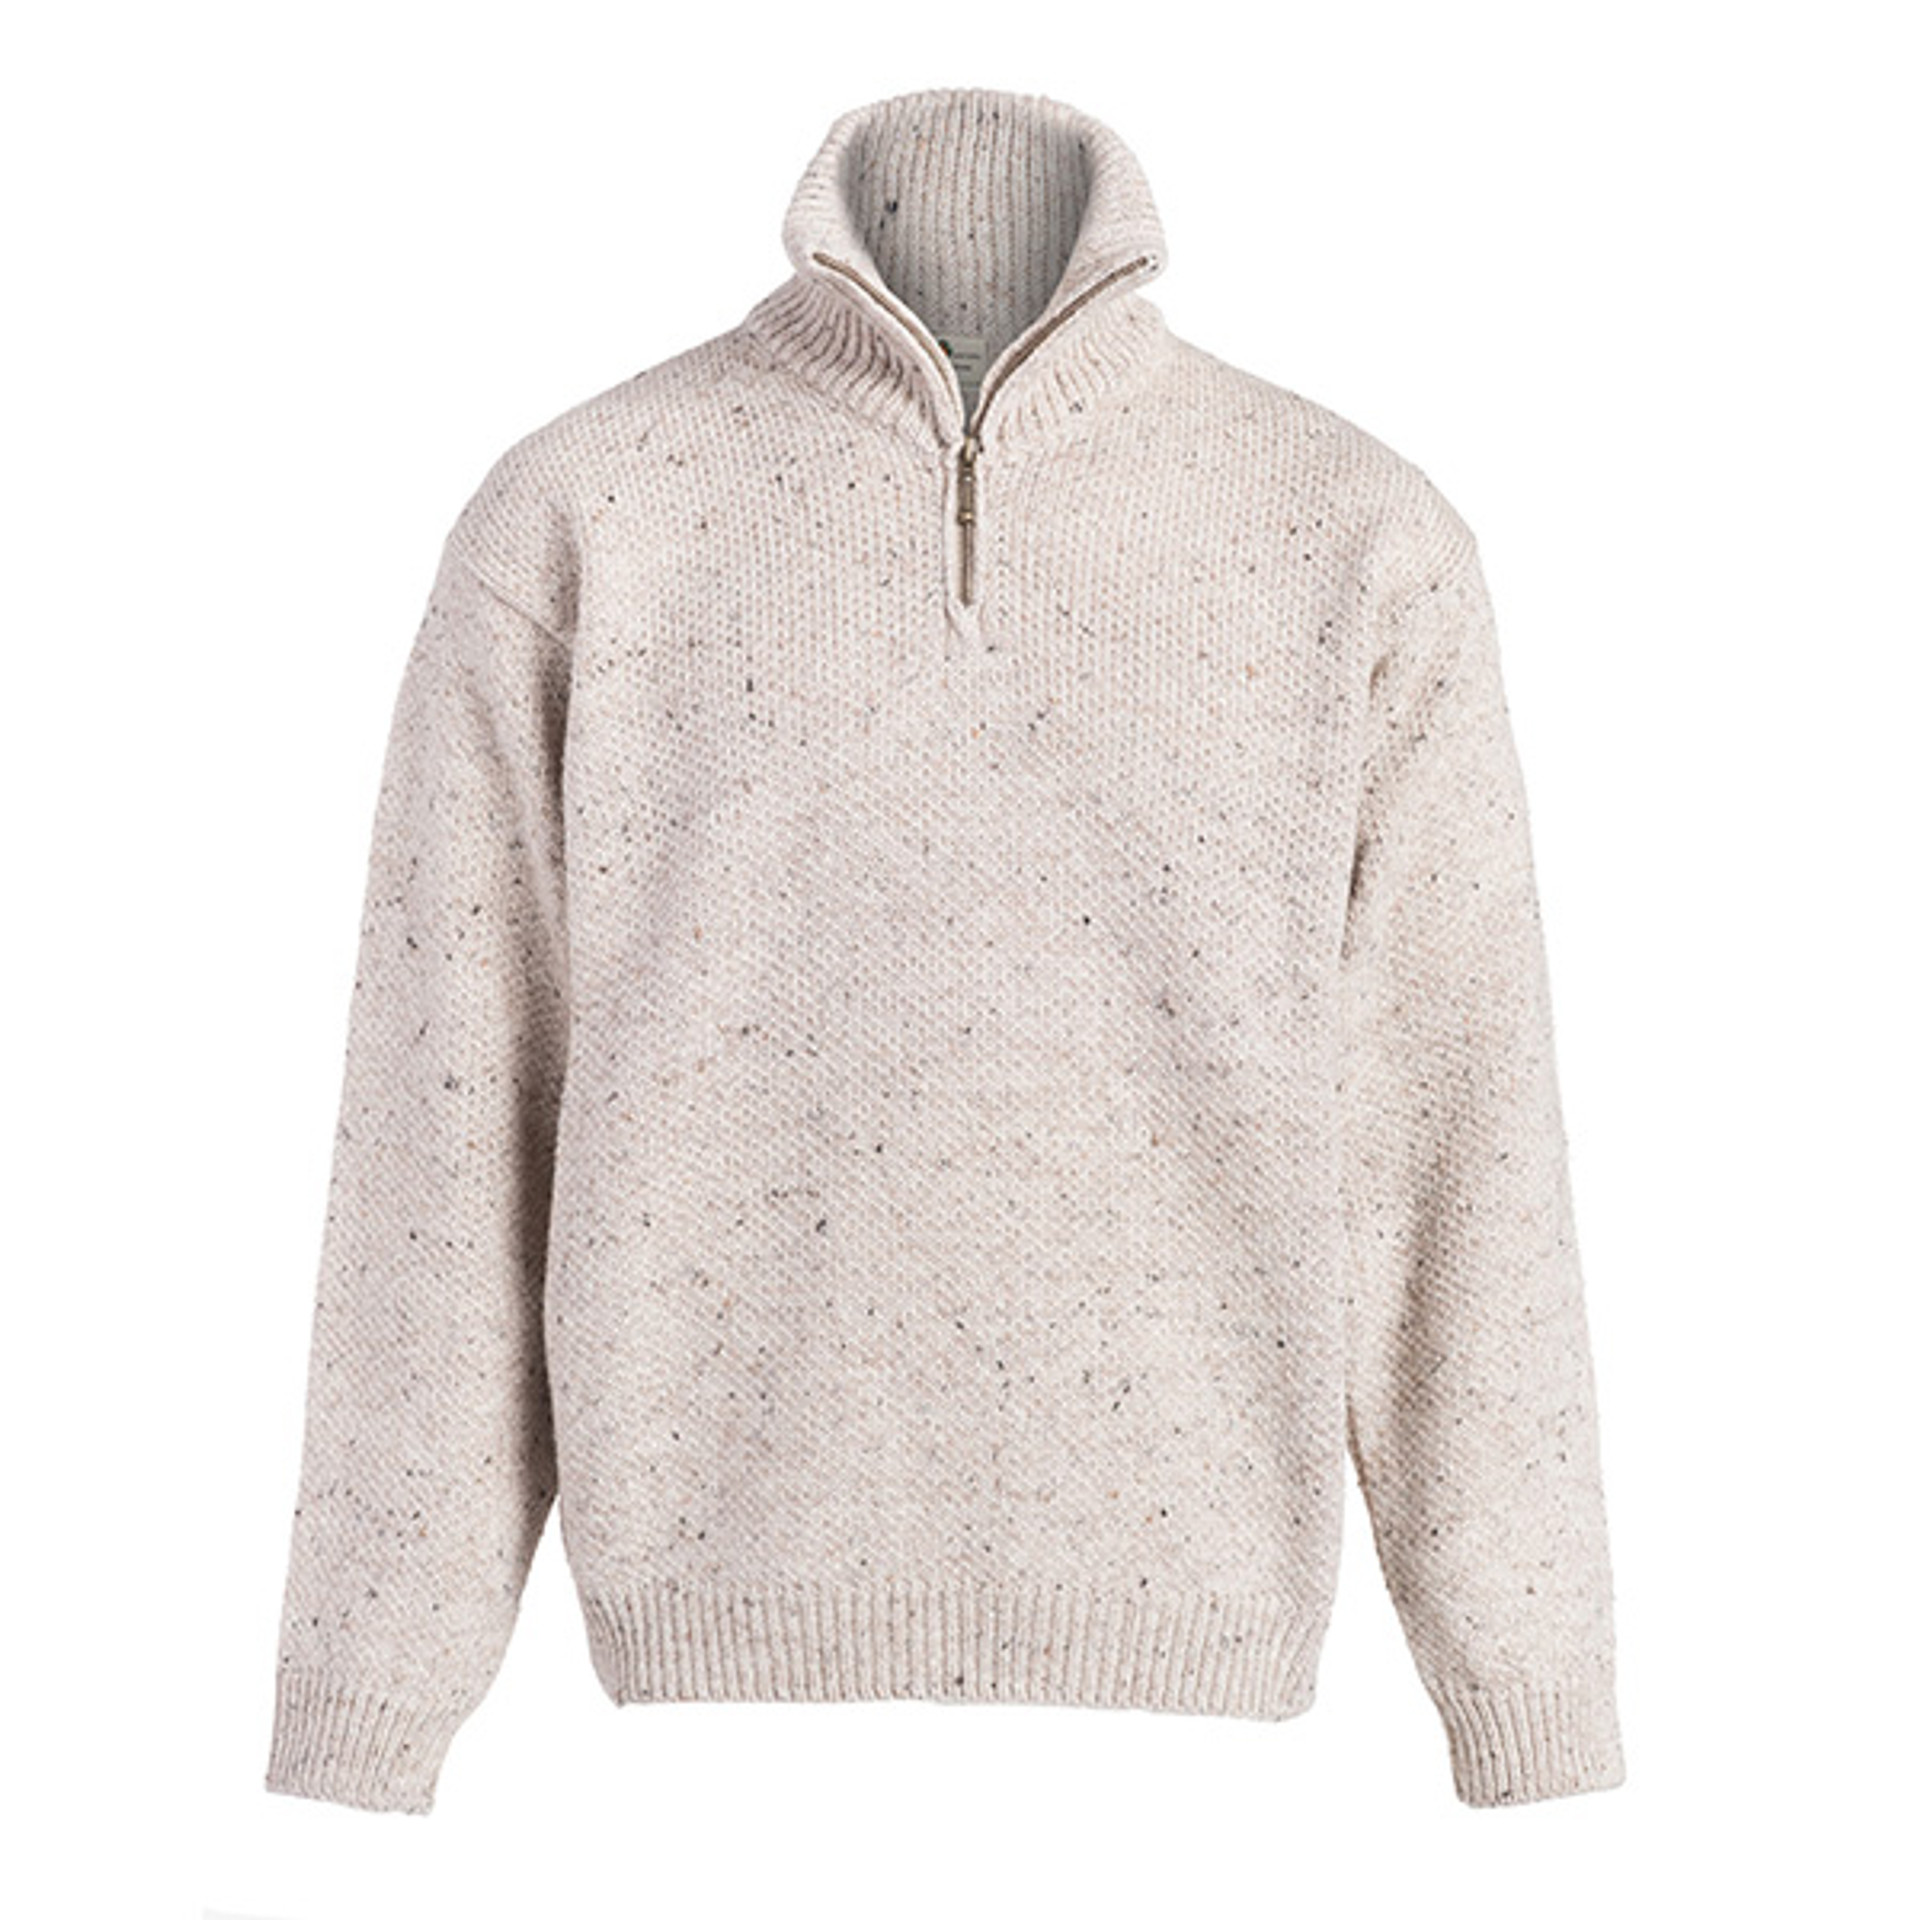 Boyne Valley Knitwear Merino Wool A Line Cardigan | Dublin Gift Co